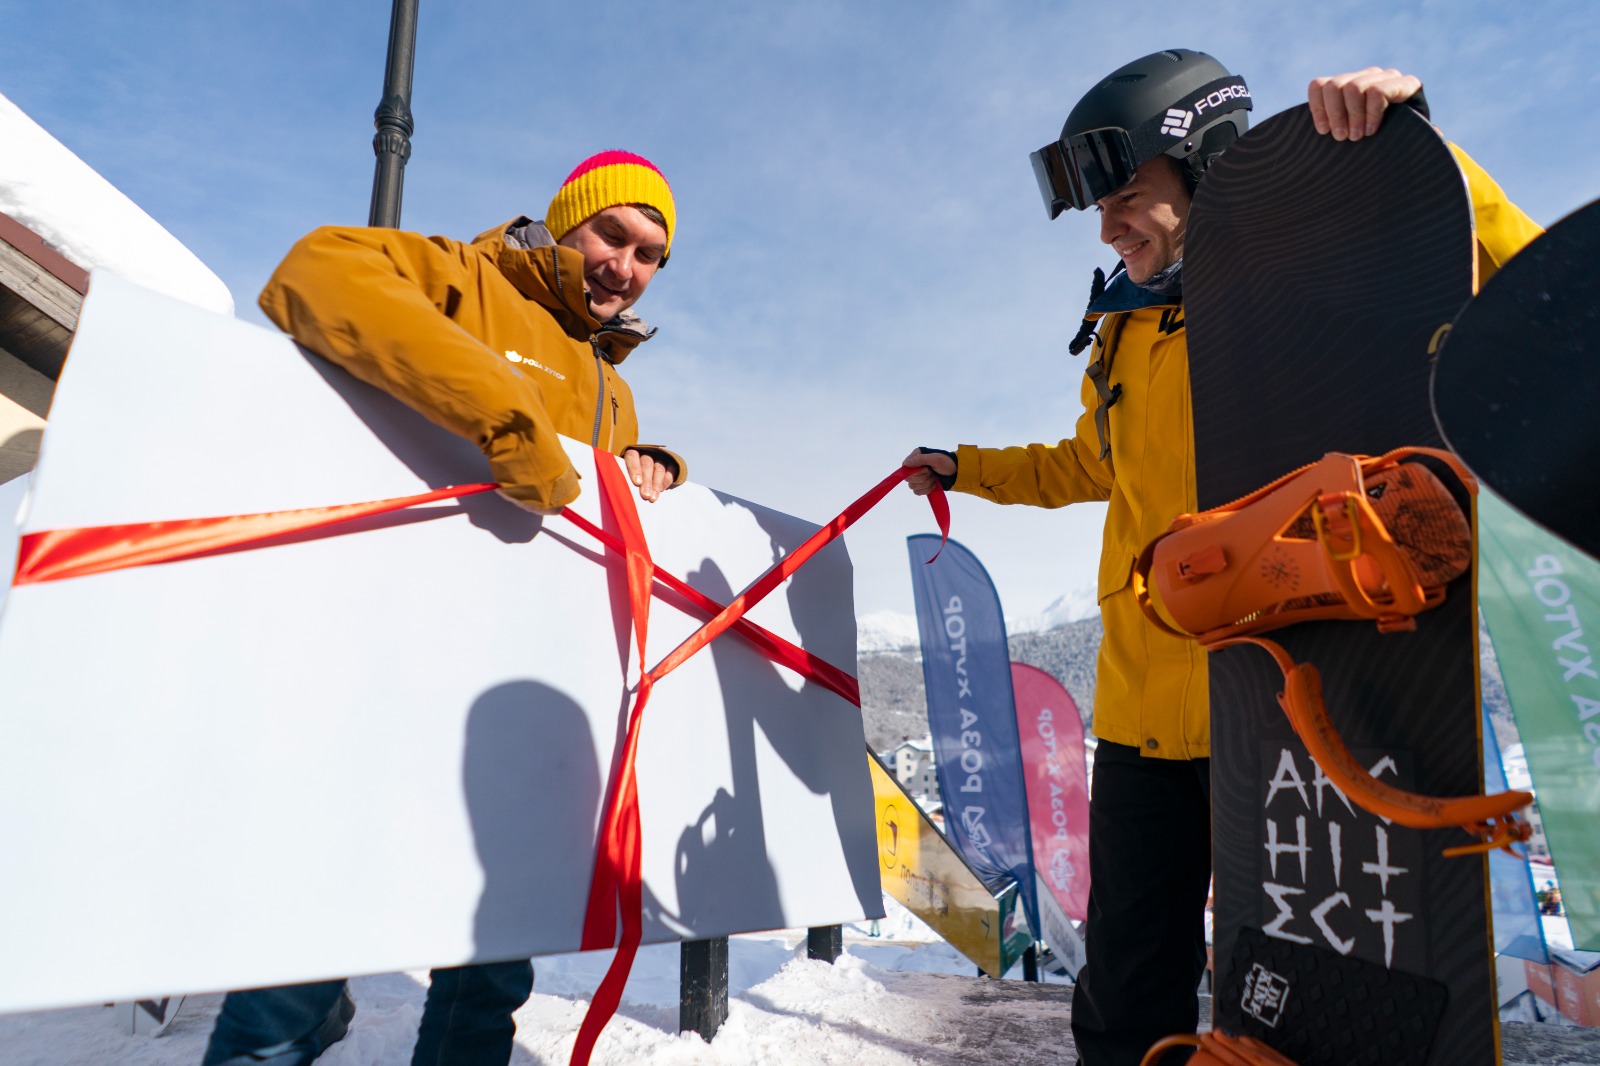 Пятнадцать миллионов ски-пассов продал курорт "Роза Хутор" с момента открытия